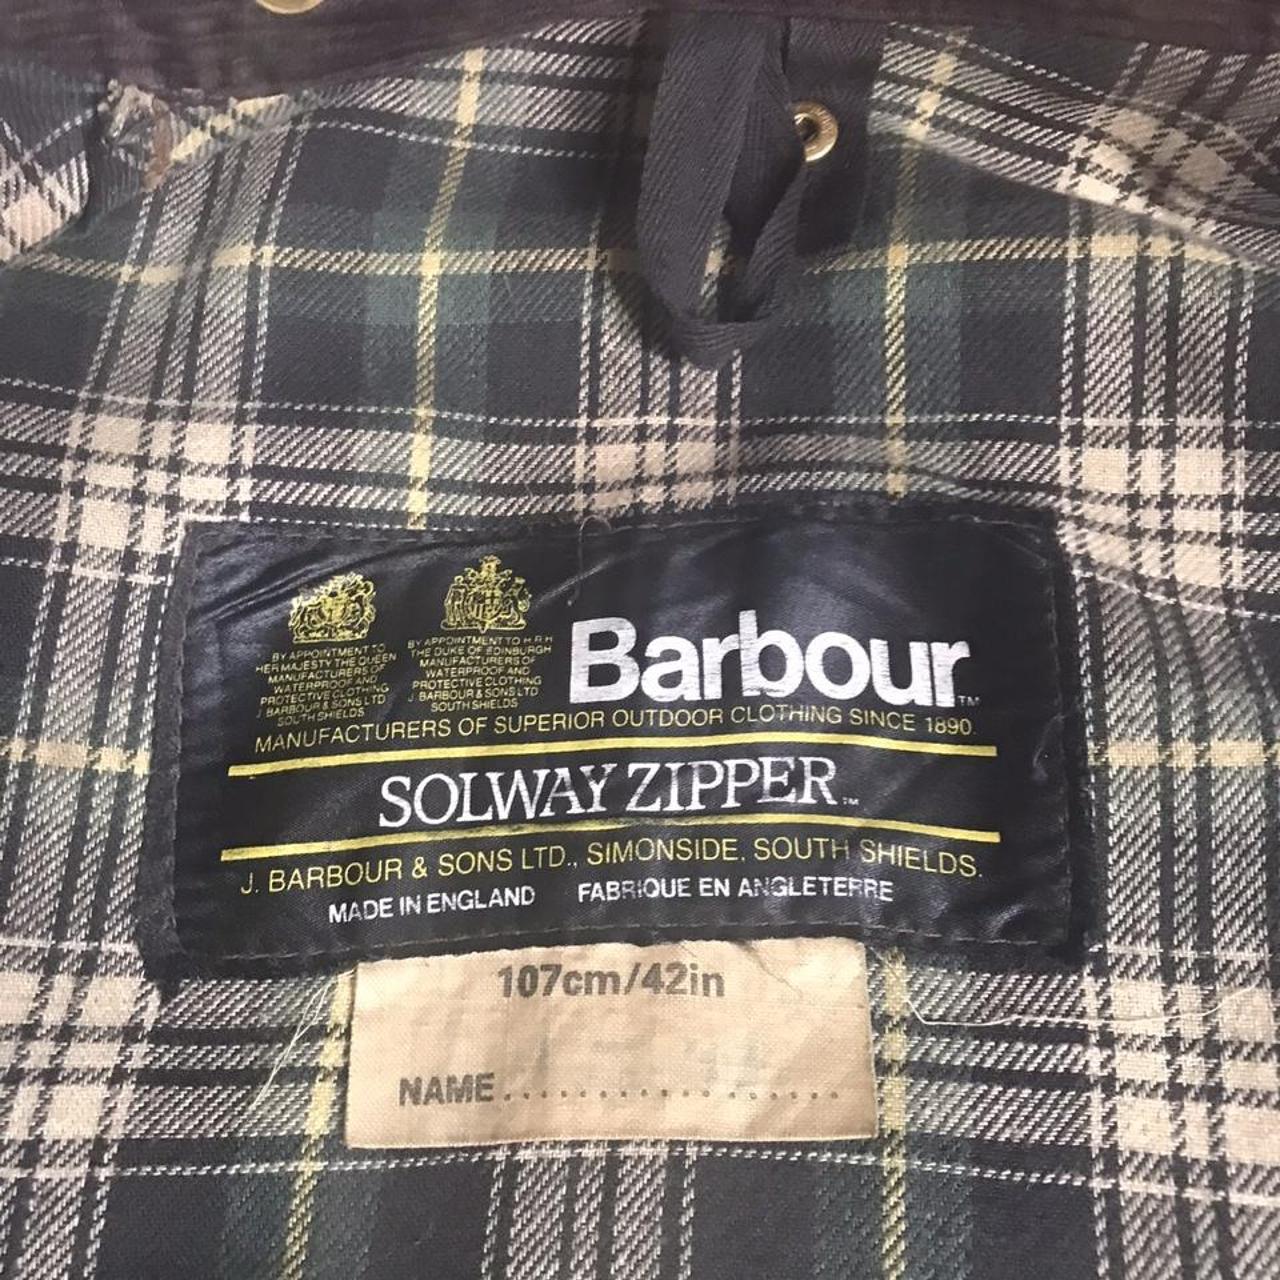 Vintage Barbour Solway Zipper Wax Cotton Belted... - Depop